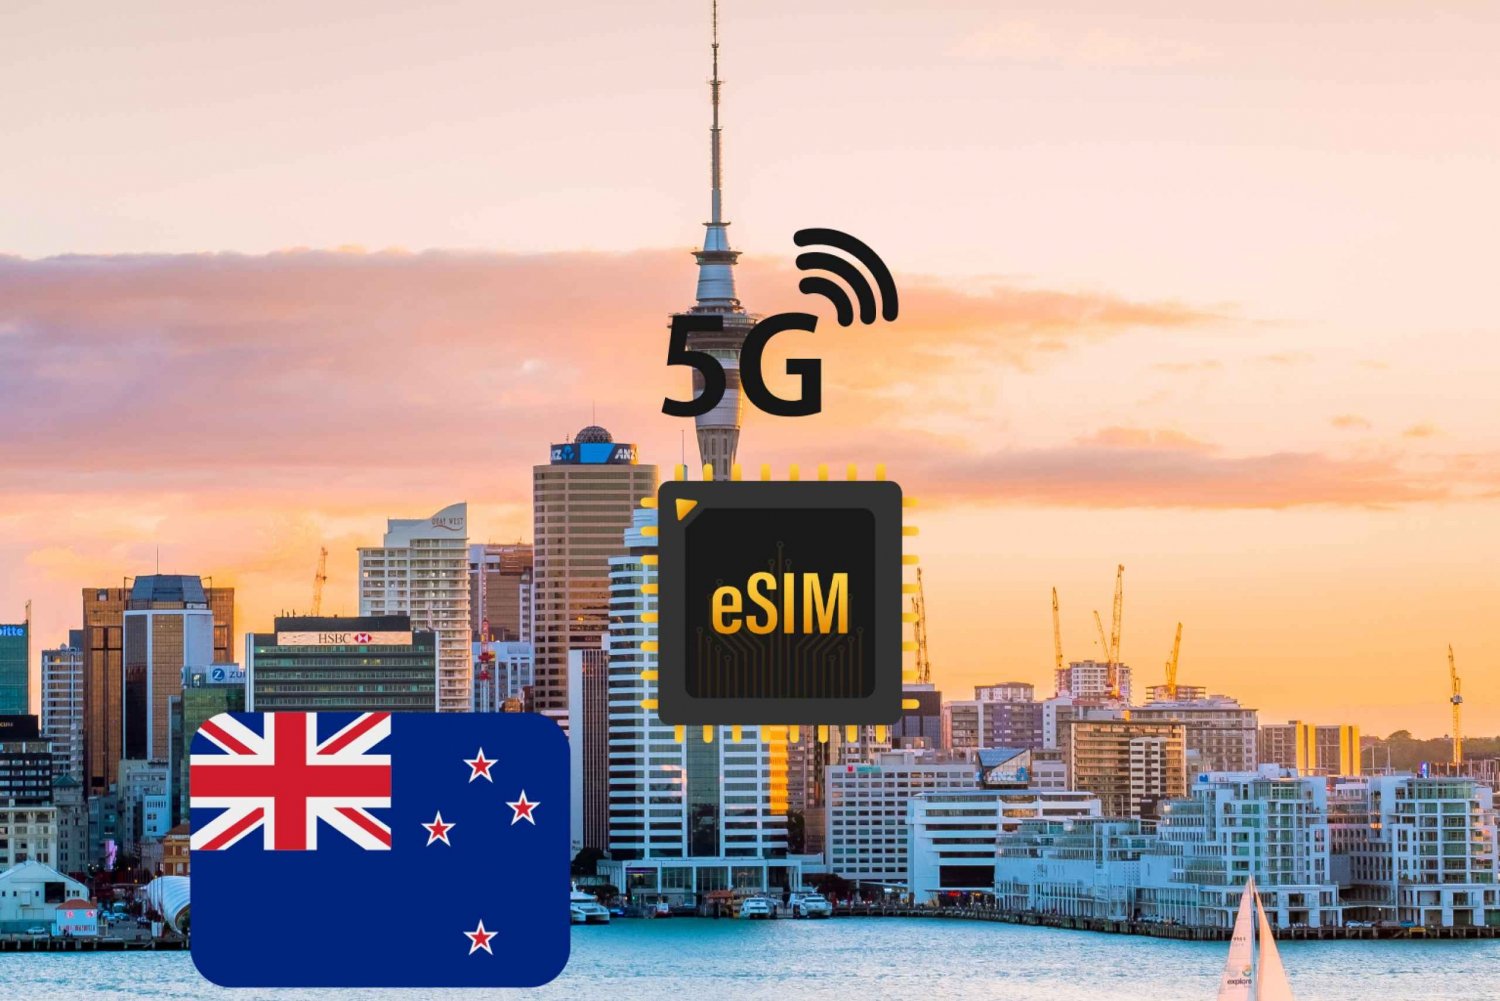 奥克兰:eSIM互联网数据计划新西兰高速5G